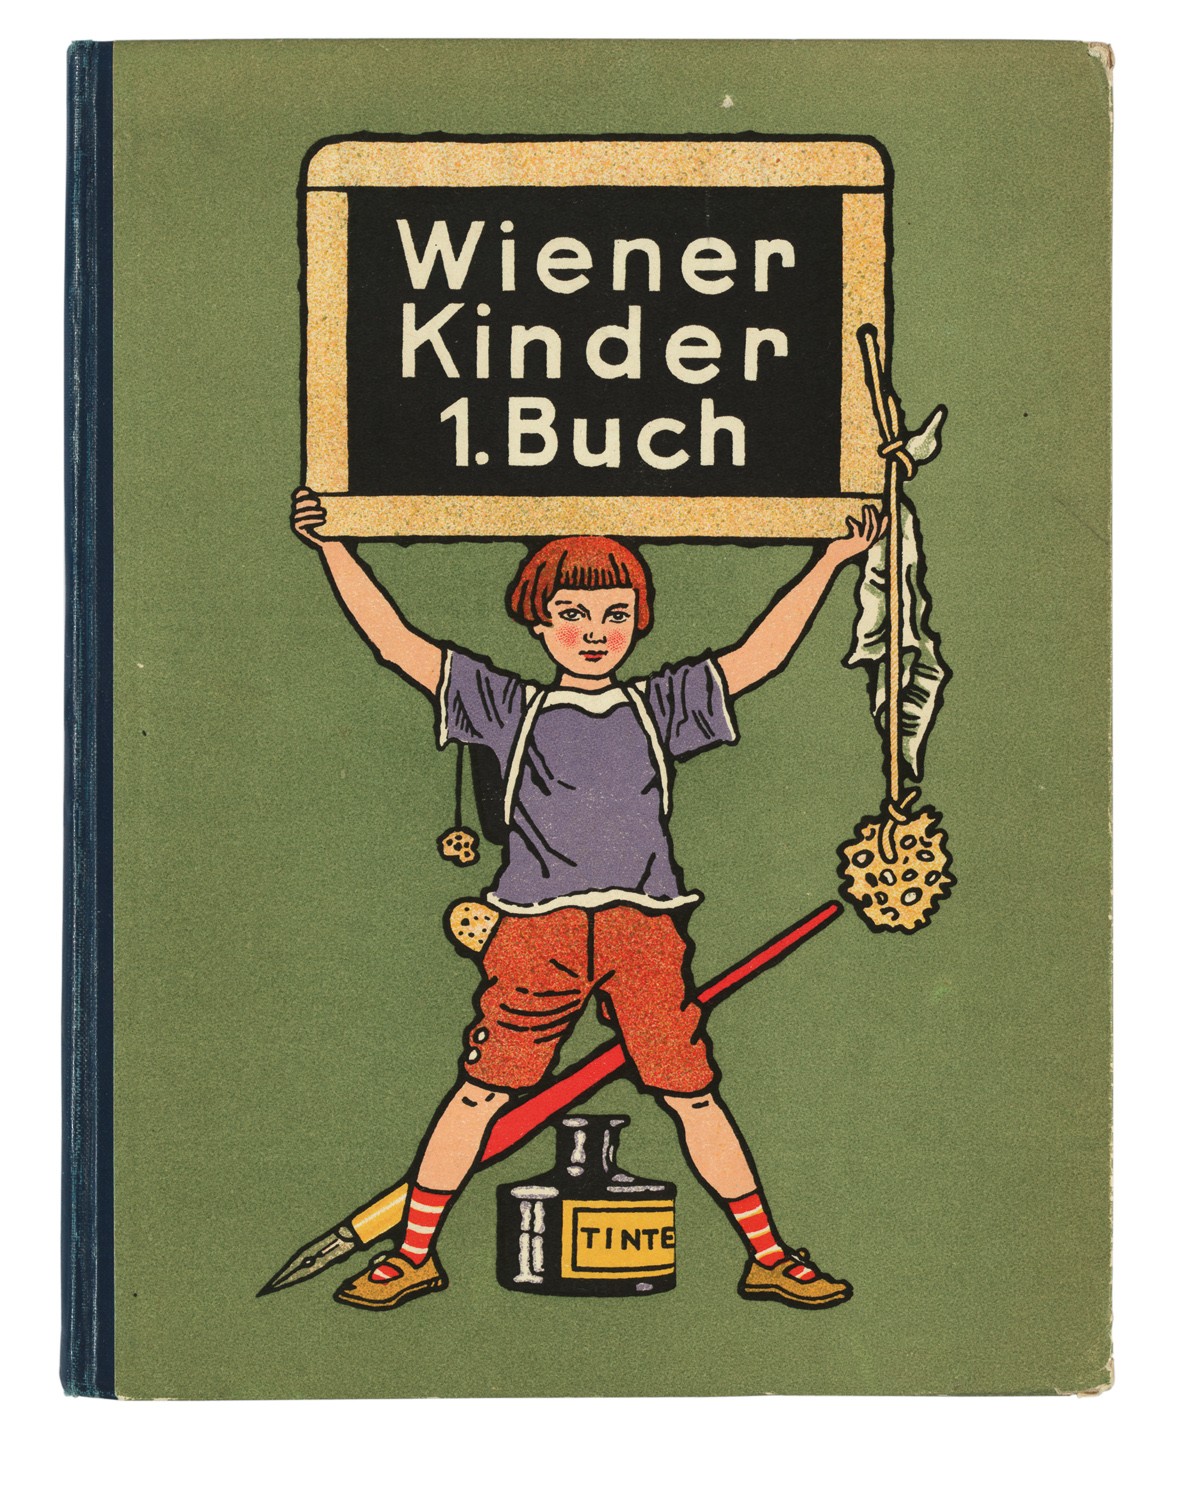 WIENER KINDER 1. BUCH [CHILDREN OF VIENNA, 1st Book]